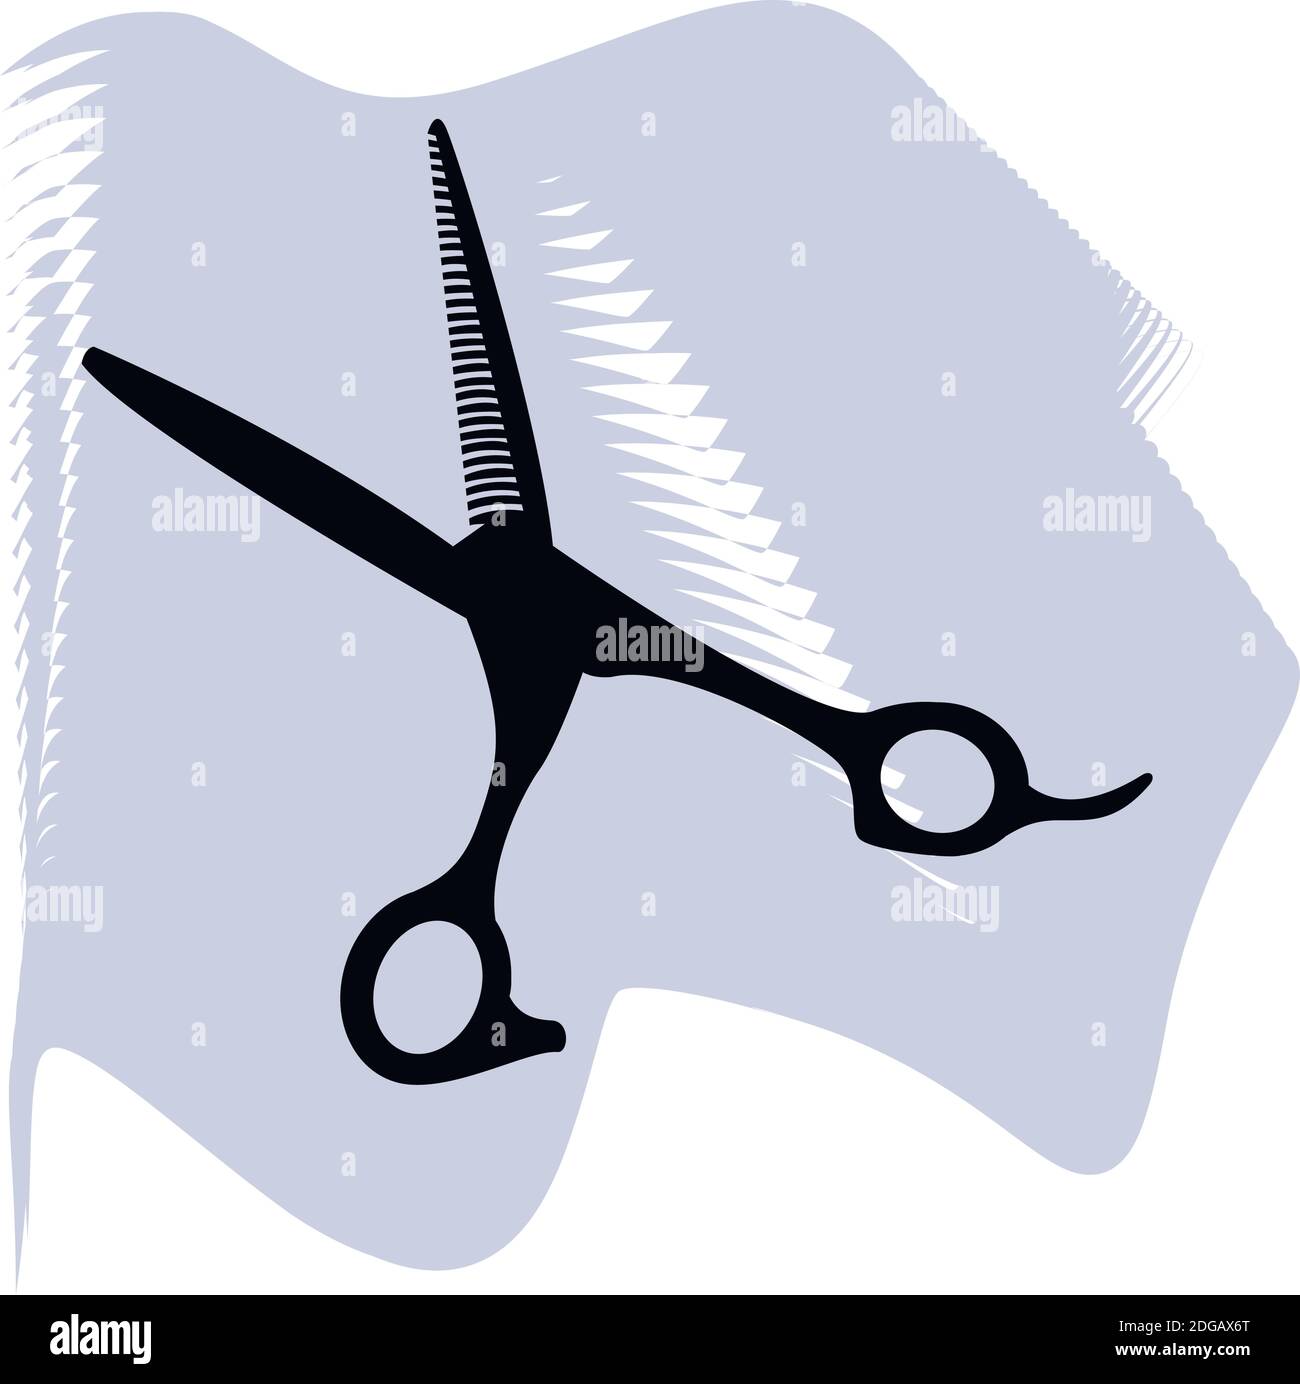 Haarscheren Vektor, Friseur, Salon, Haar, schwarze Schere auf lila Punkt Symbol eines Sets, isoliert auf weißem Hintergrund. EPS 10 Stock Vektor